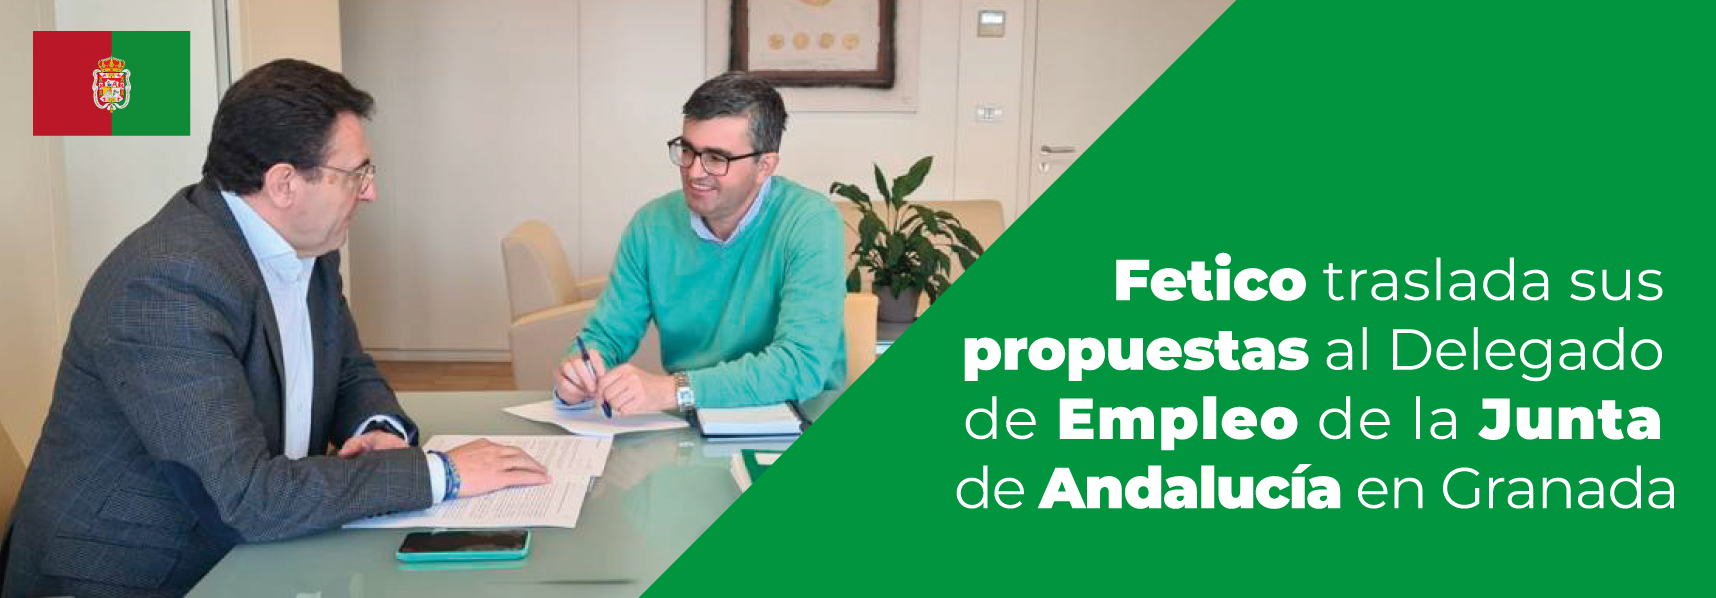 Fetico traslada sus propuestas al Delegado de Empleo de la Junta de Andalucía en Granada.